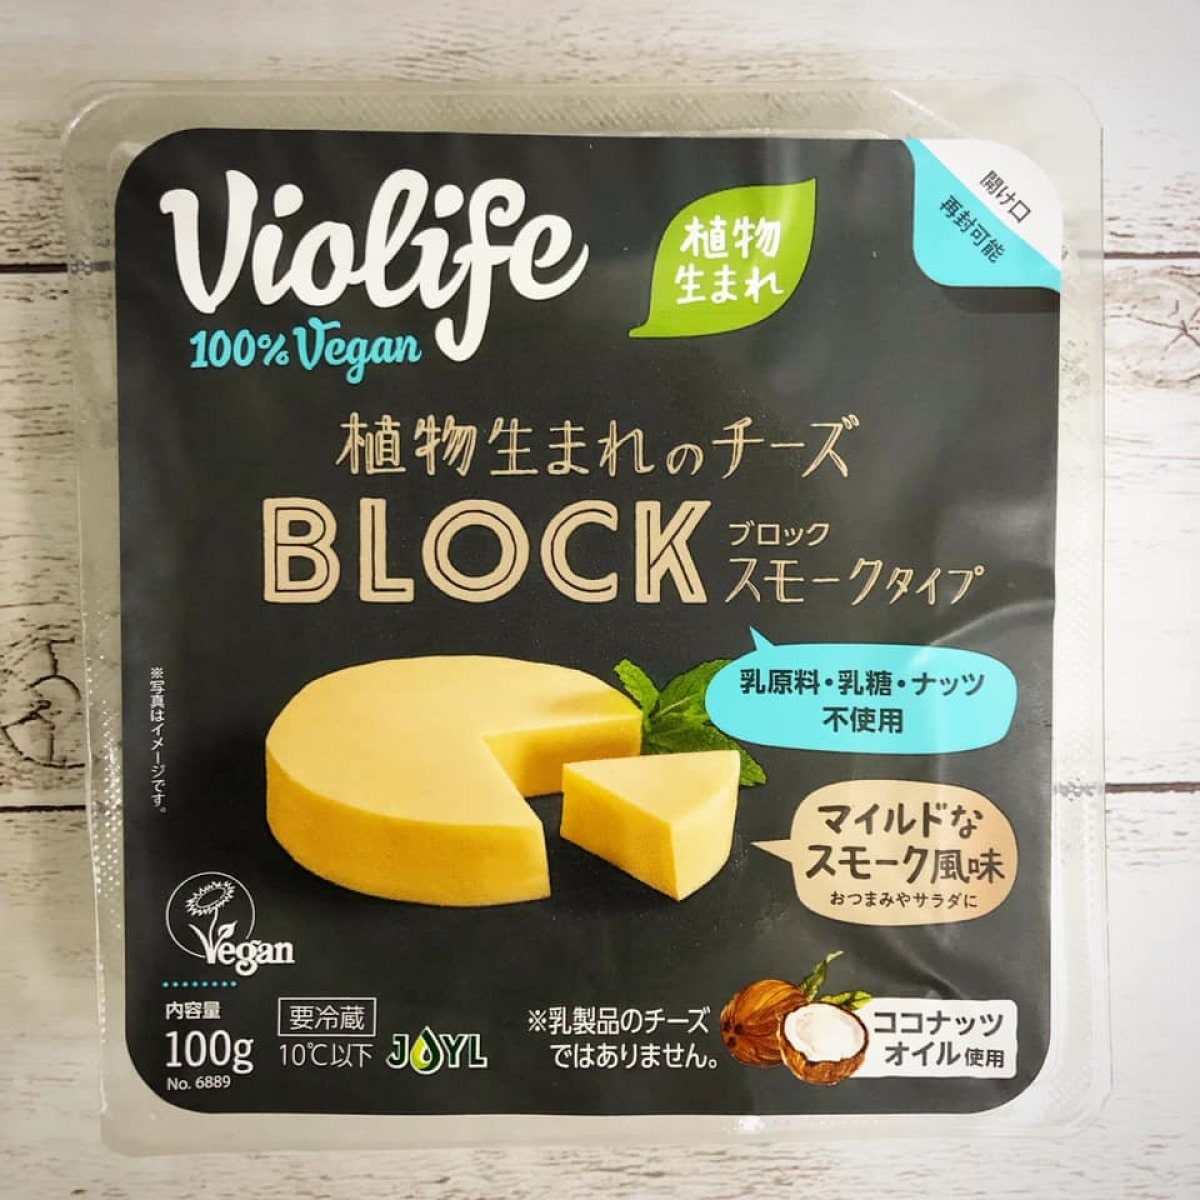 植物生まれのチーズブロック/スモークタイプ 100g[Violife] ☆乳製品不使用☆【クール便(冷蔵)※冷凍不可